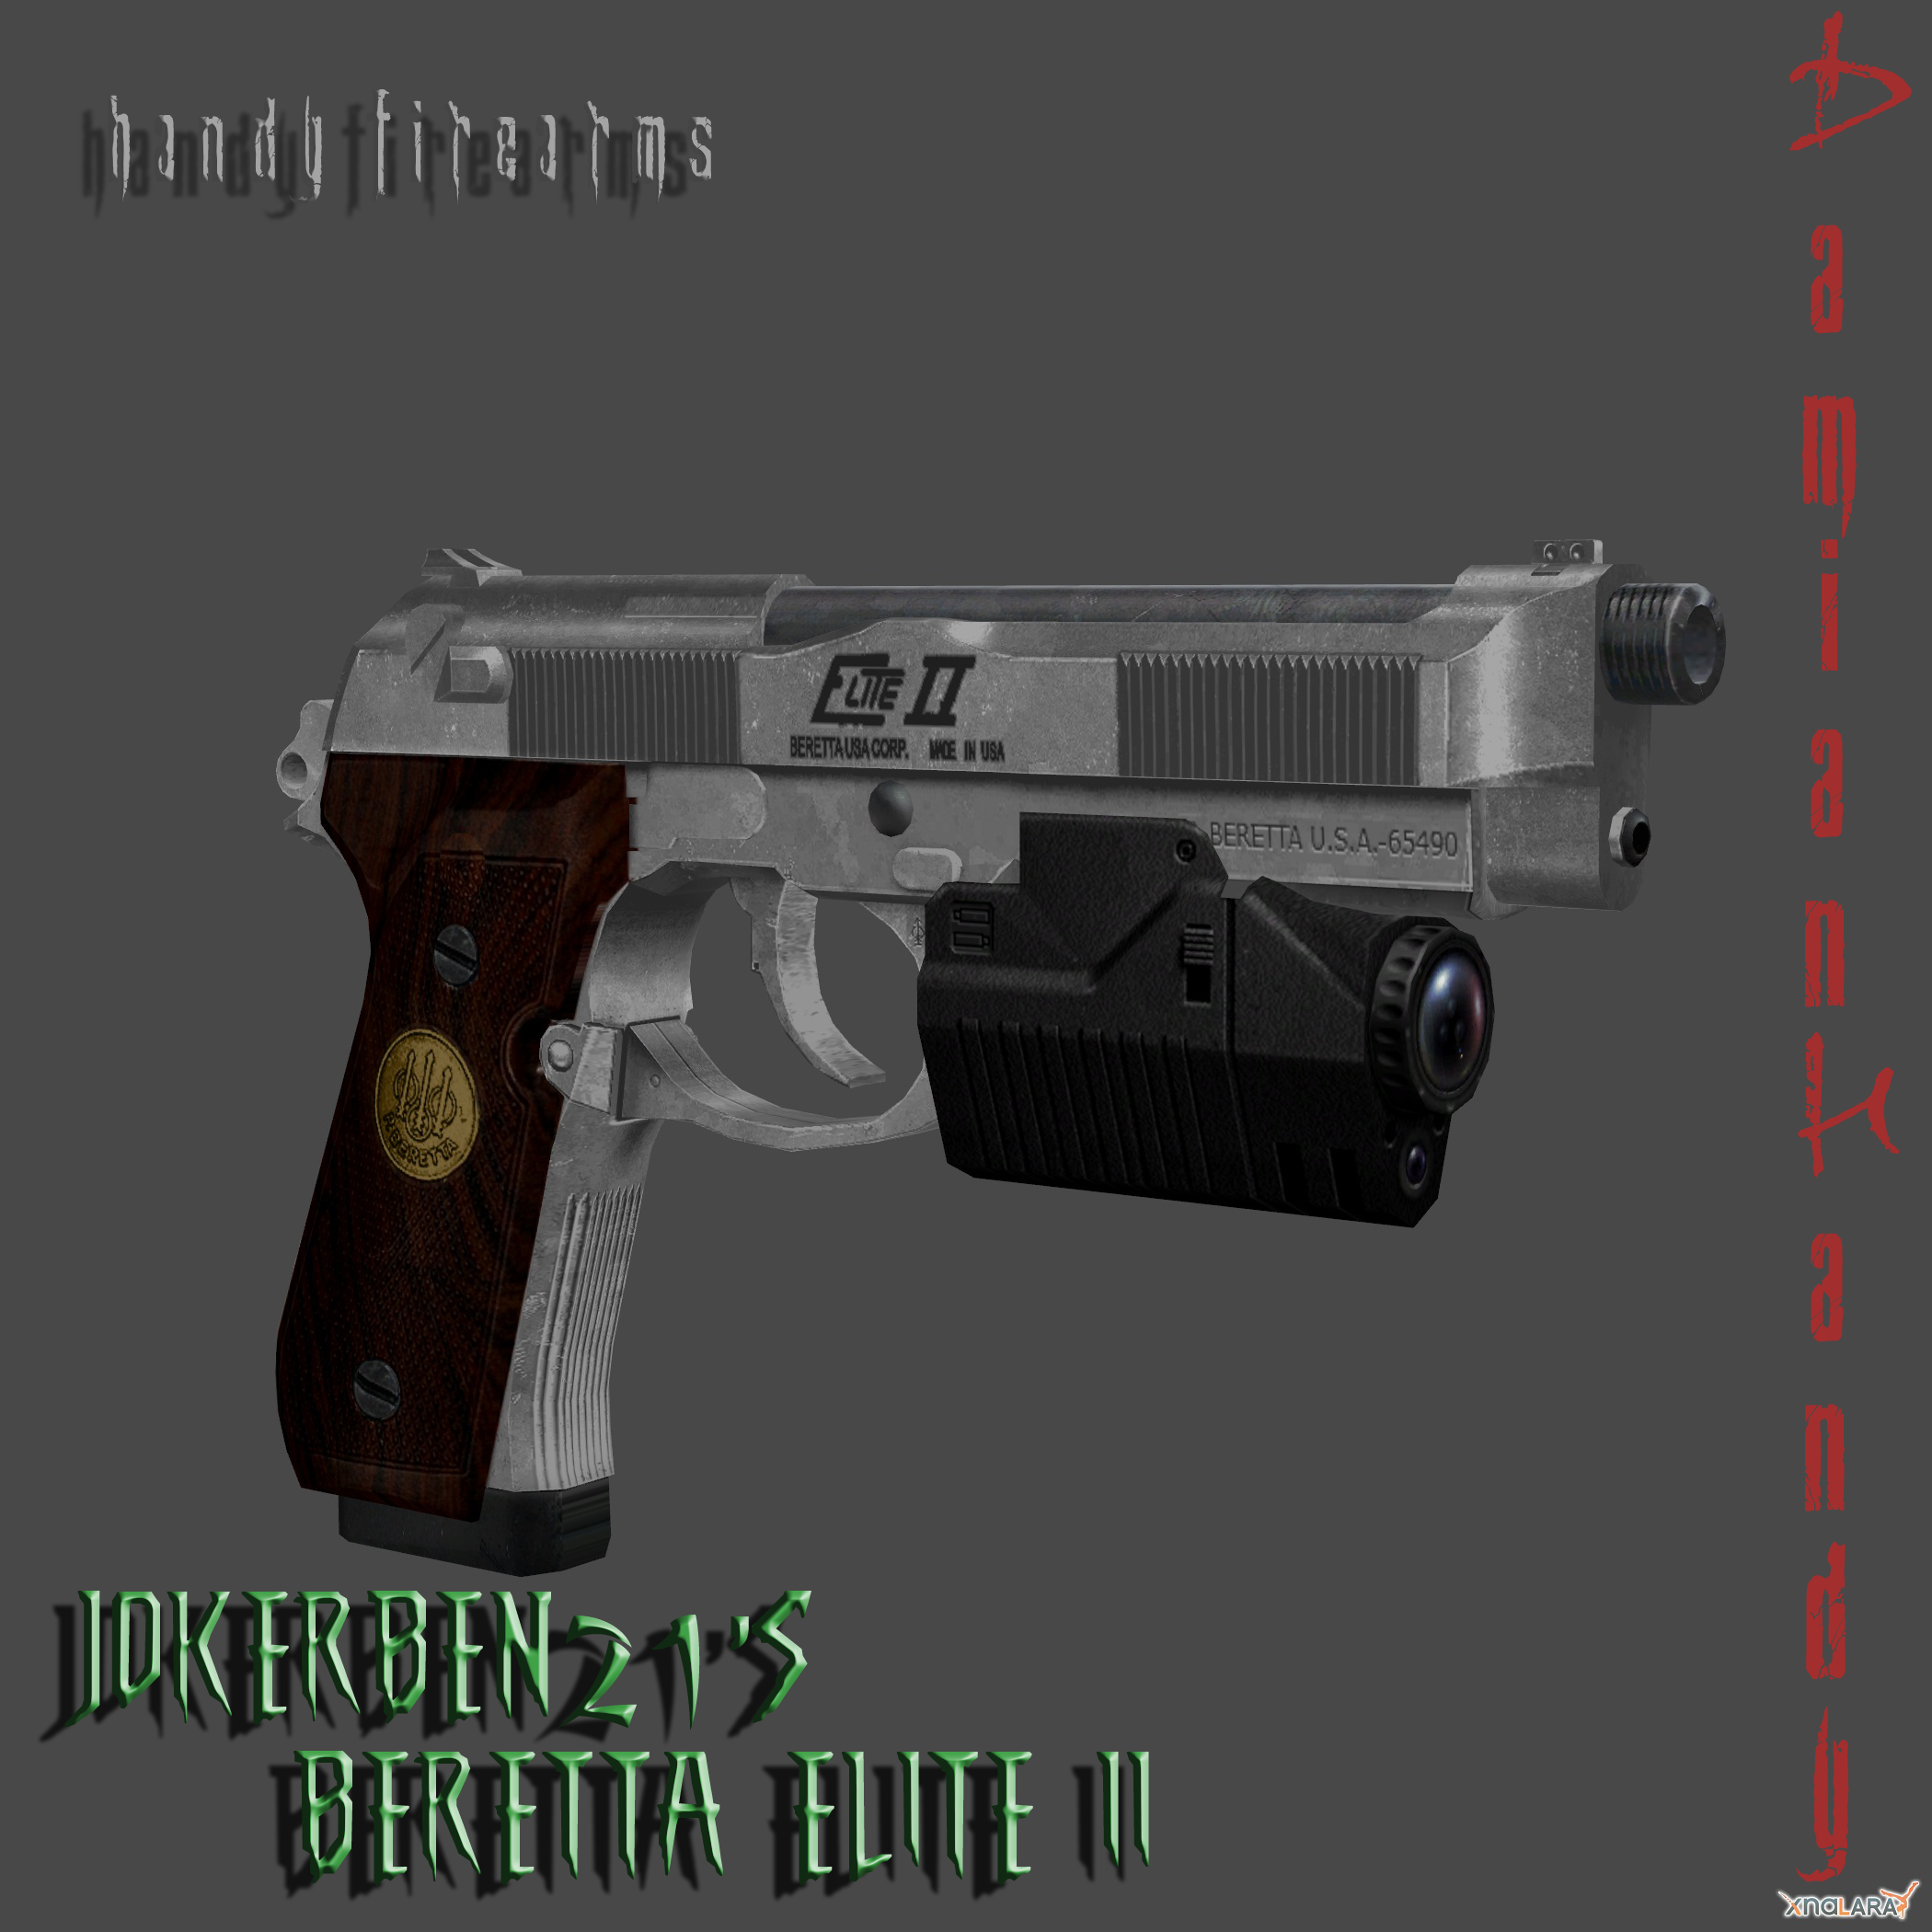 JokerBen21's Beretta Elite II